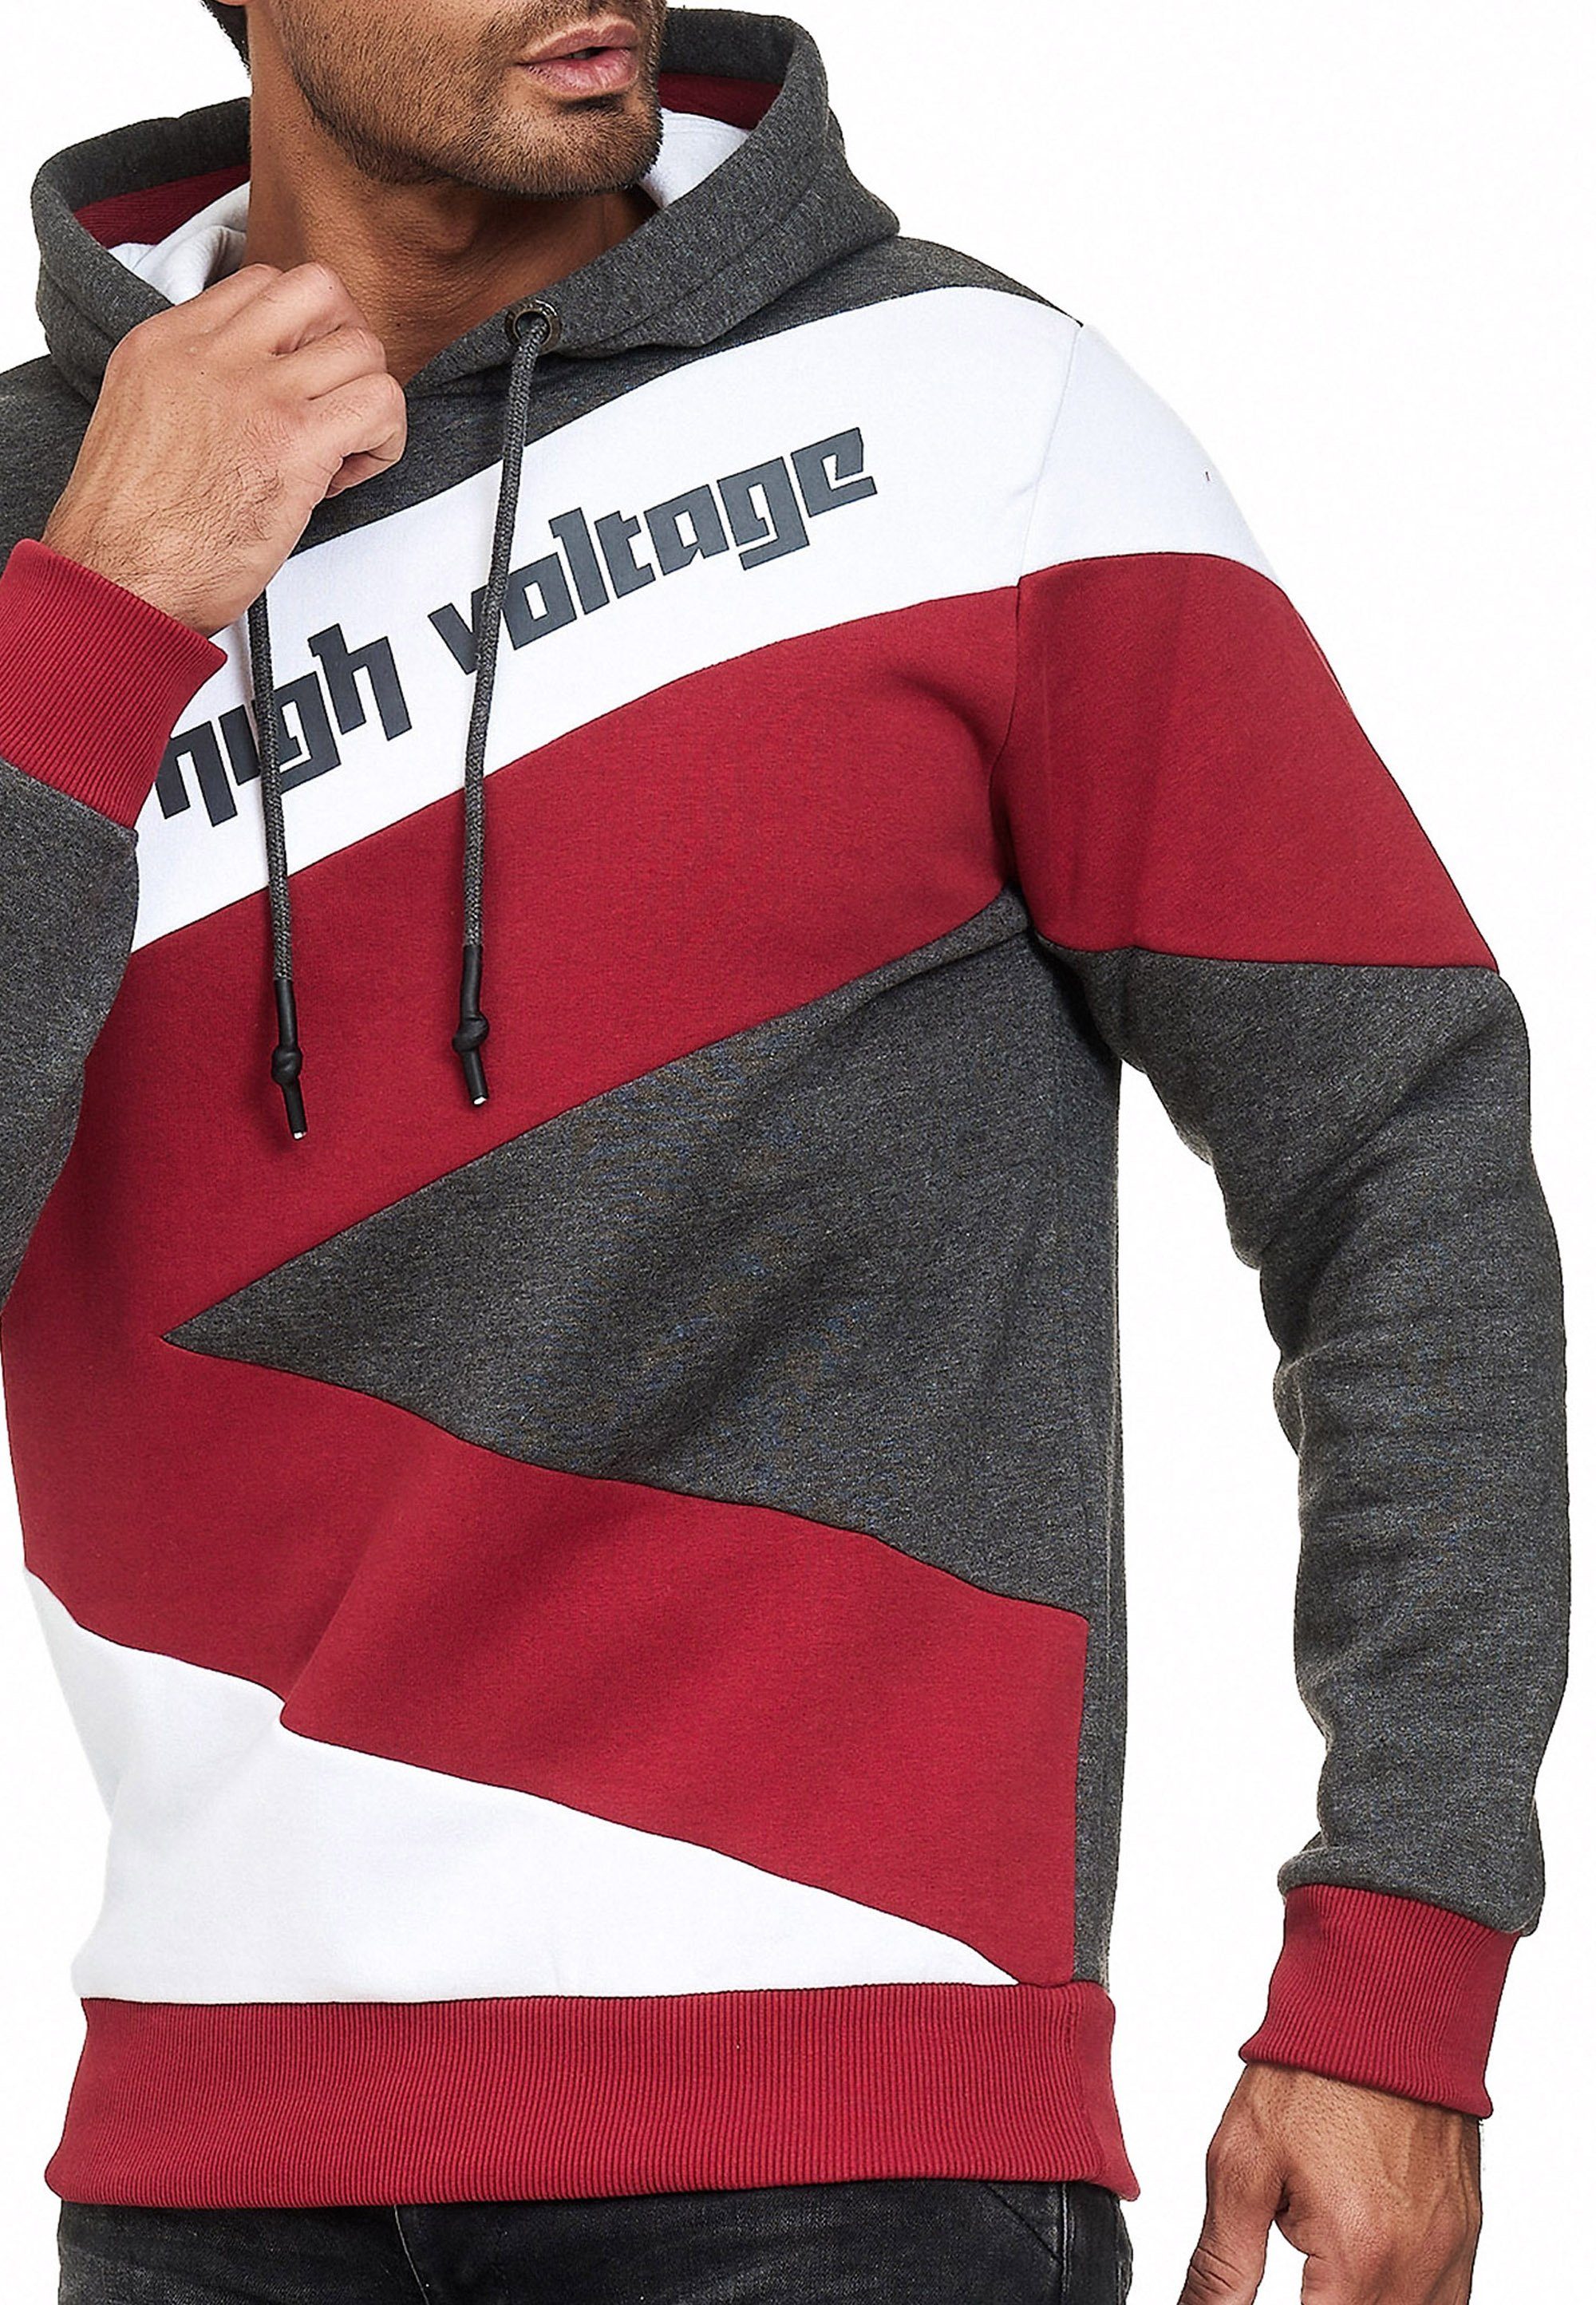 Rusty Neal Kapuzensweatshirt in sportlichem anthrazit-weiß Design